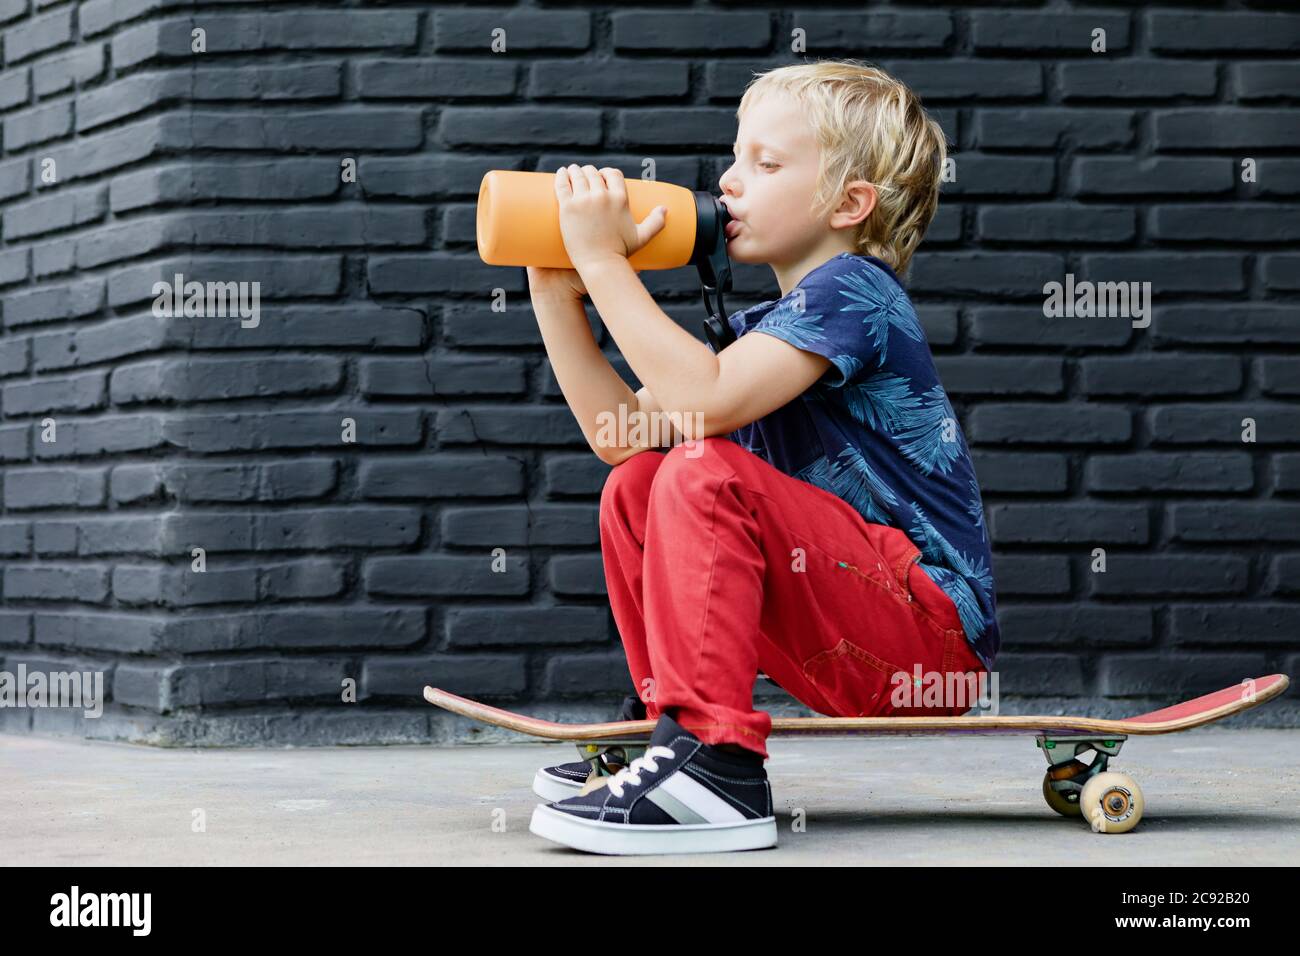 Le jeune patineur s'assoit sur le skateboard, boit de l'eau fraîche du biberon réutilisable après la formation des enfants. Vie familiale active, activités de plein air Banque D'Images